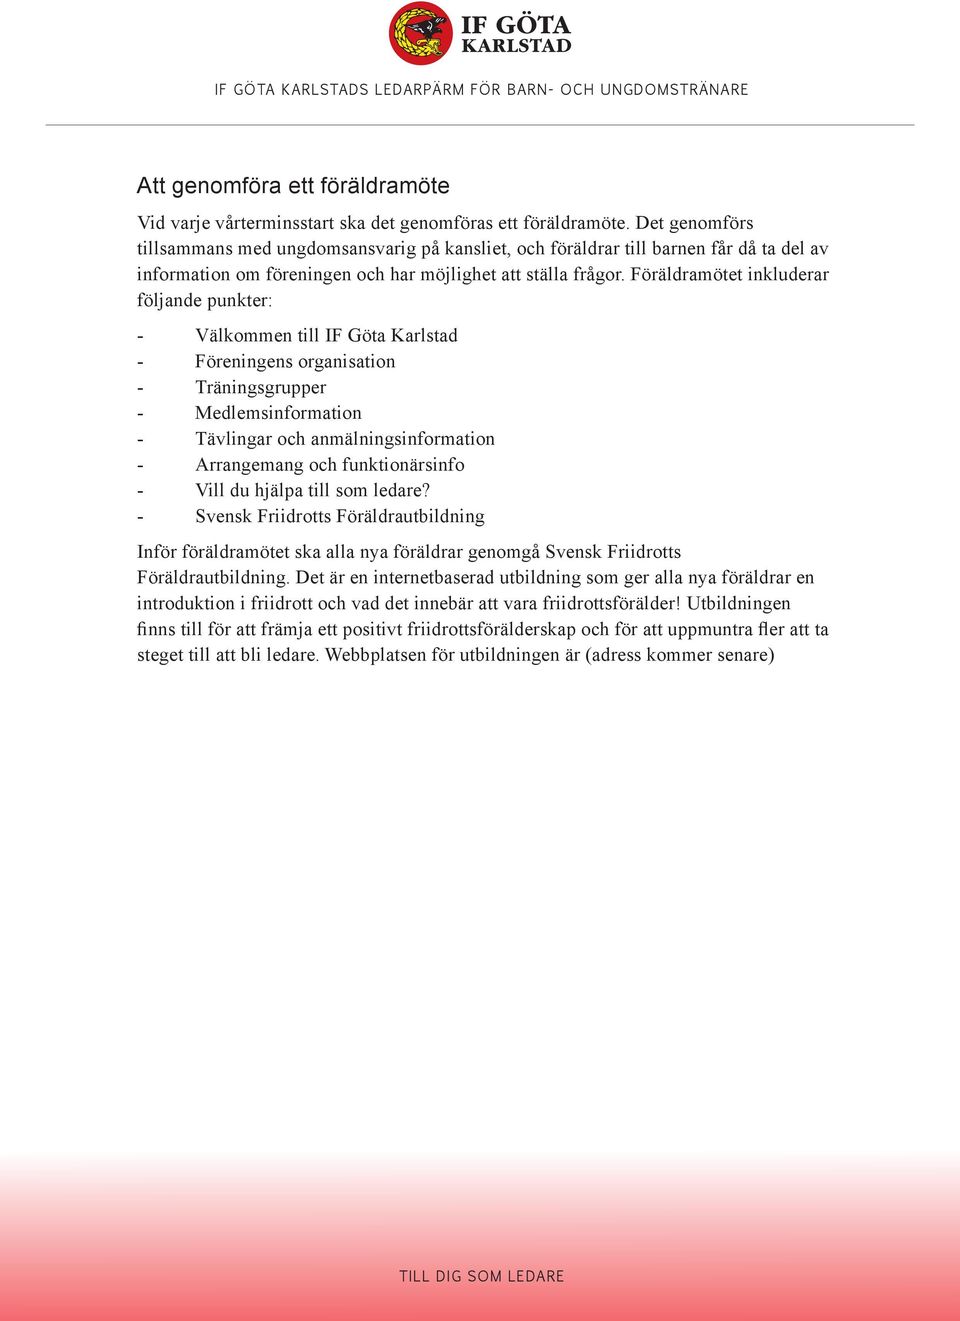 Föräldramötet inkluderar följande punkter: - Välkommen till IF Göta Karlstad - Föreningens organisation - Träningsgrupper - Medlemsinformation - Tävlingar och anmälningsinformation - Arrangemang och